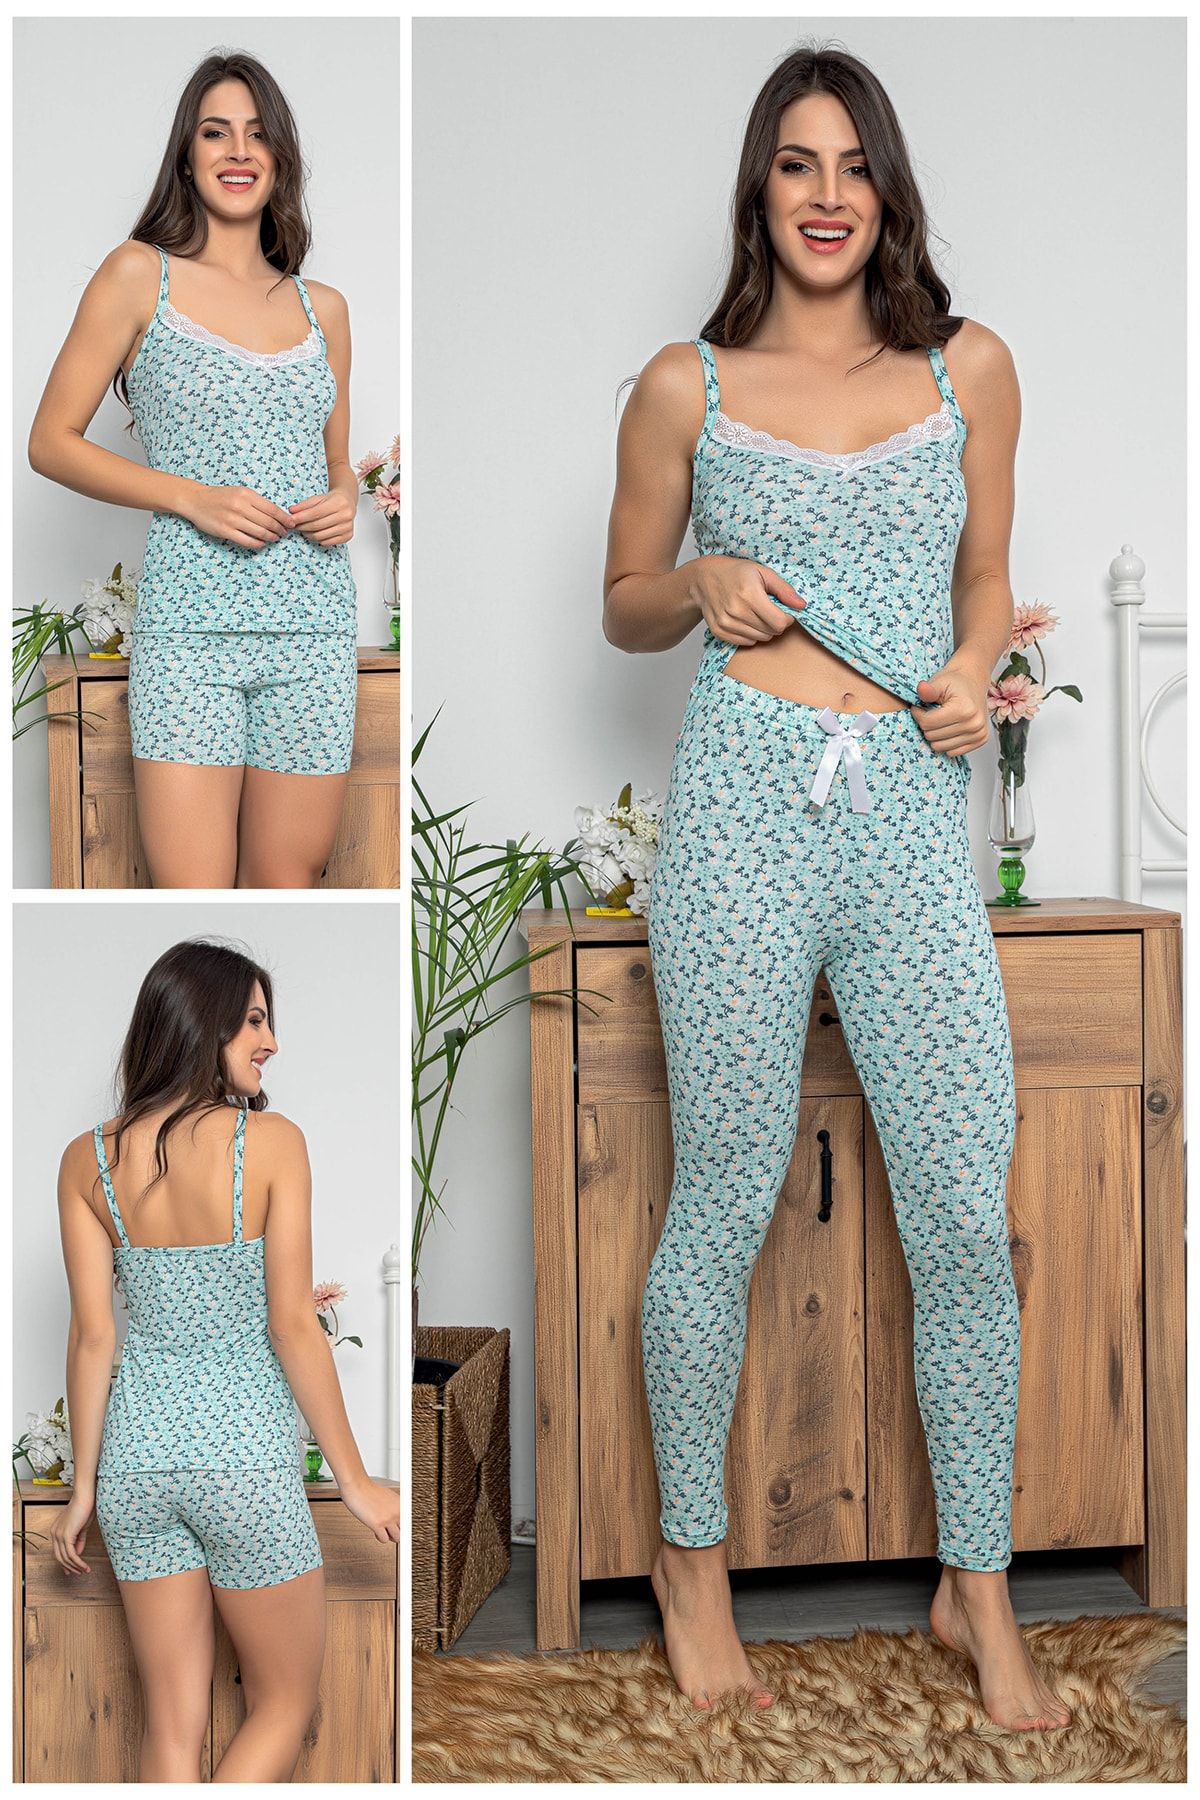 MyBen Kadın Çiçek Desenli Dantel Detaylı Şortlu Ve Taytlı Pijama Takımı 3'lü Set 75013